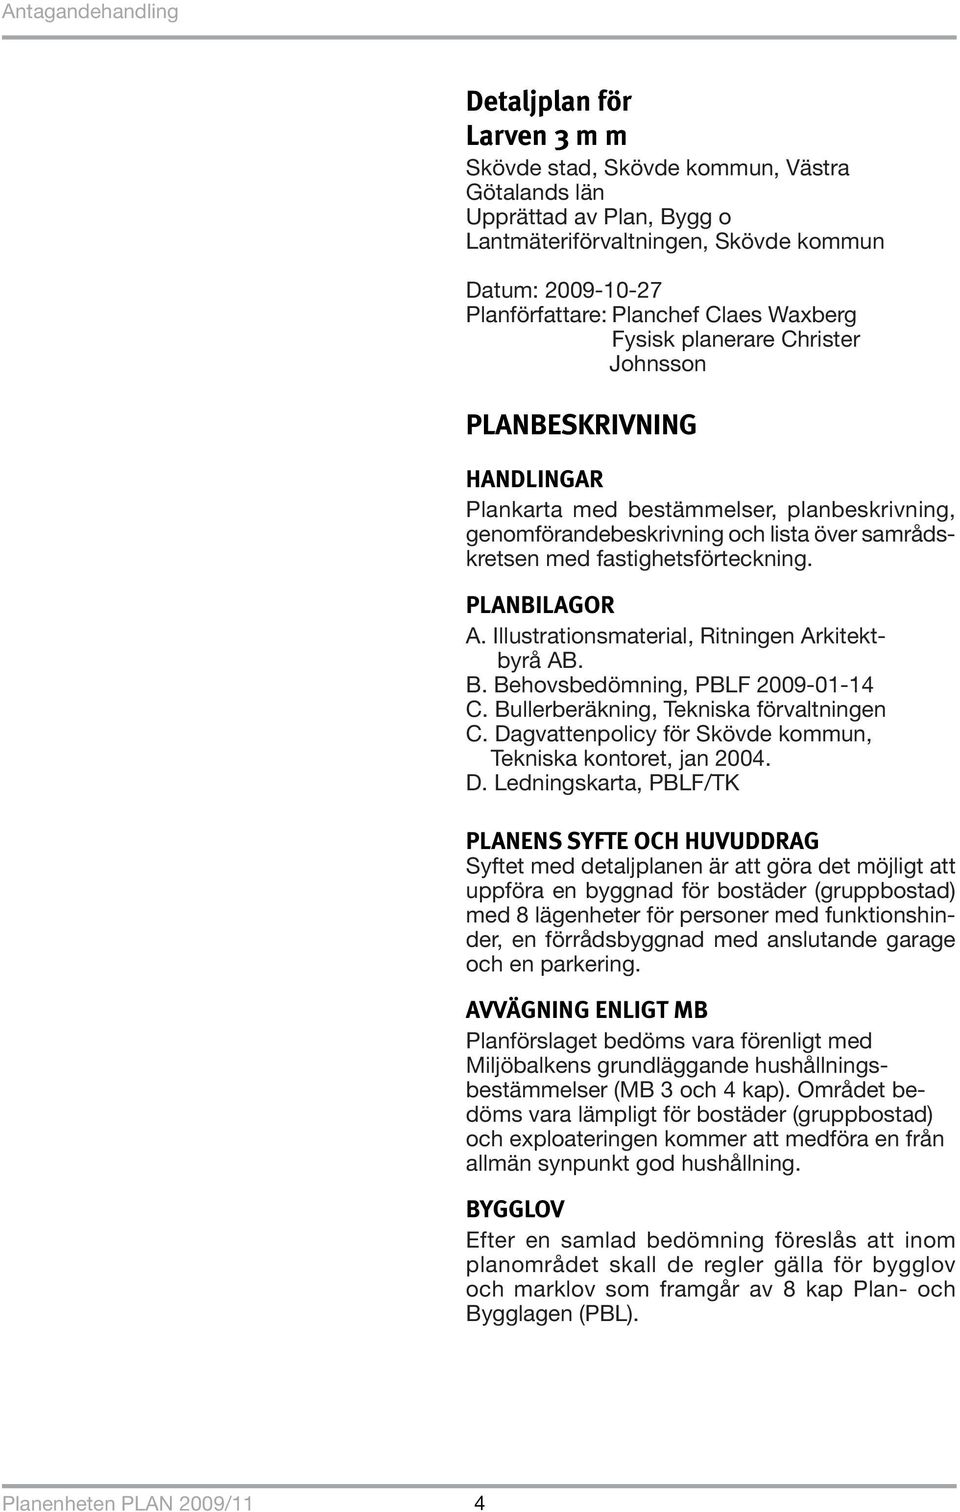 PLANBILAGOR A. Illustrationsmaterial, Ritningen Arkitektbyrå AB. B. Behovsbedömning, PBLF 2009-01-14 C. Bullerberäkning, Tekniska förvaltningen C.